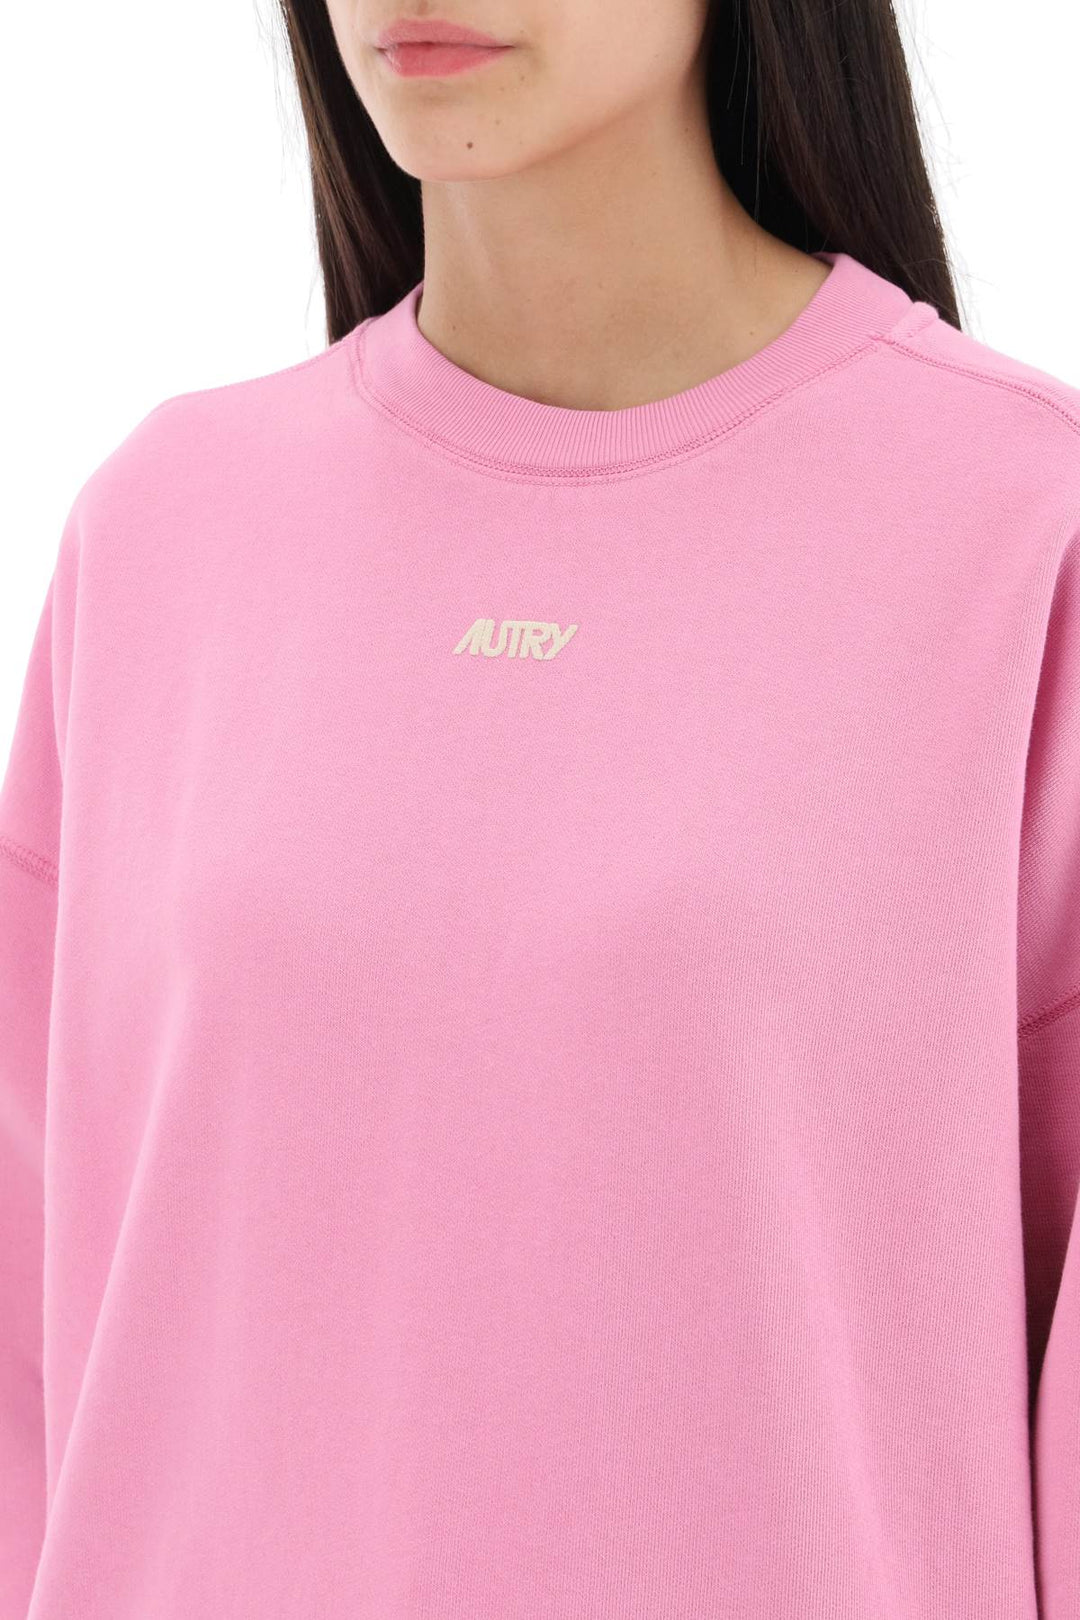 Autry Crew Neck Sweatshirt With Logo Print   Rosa